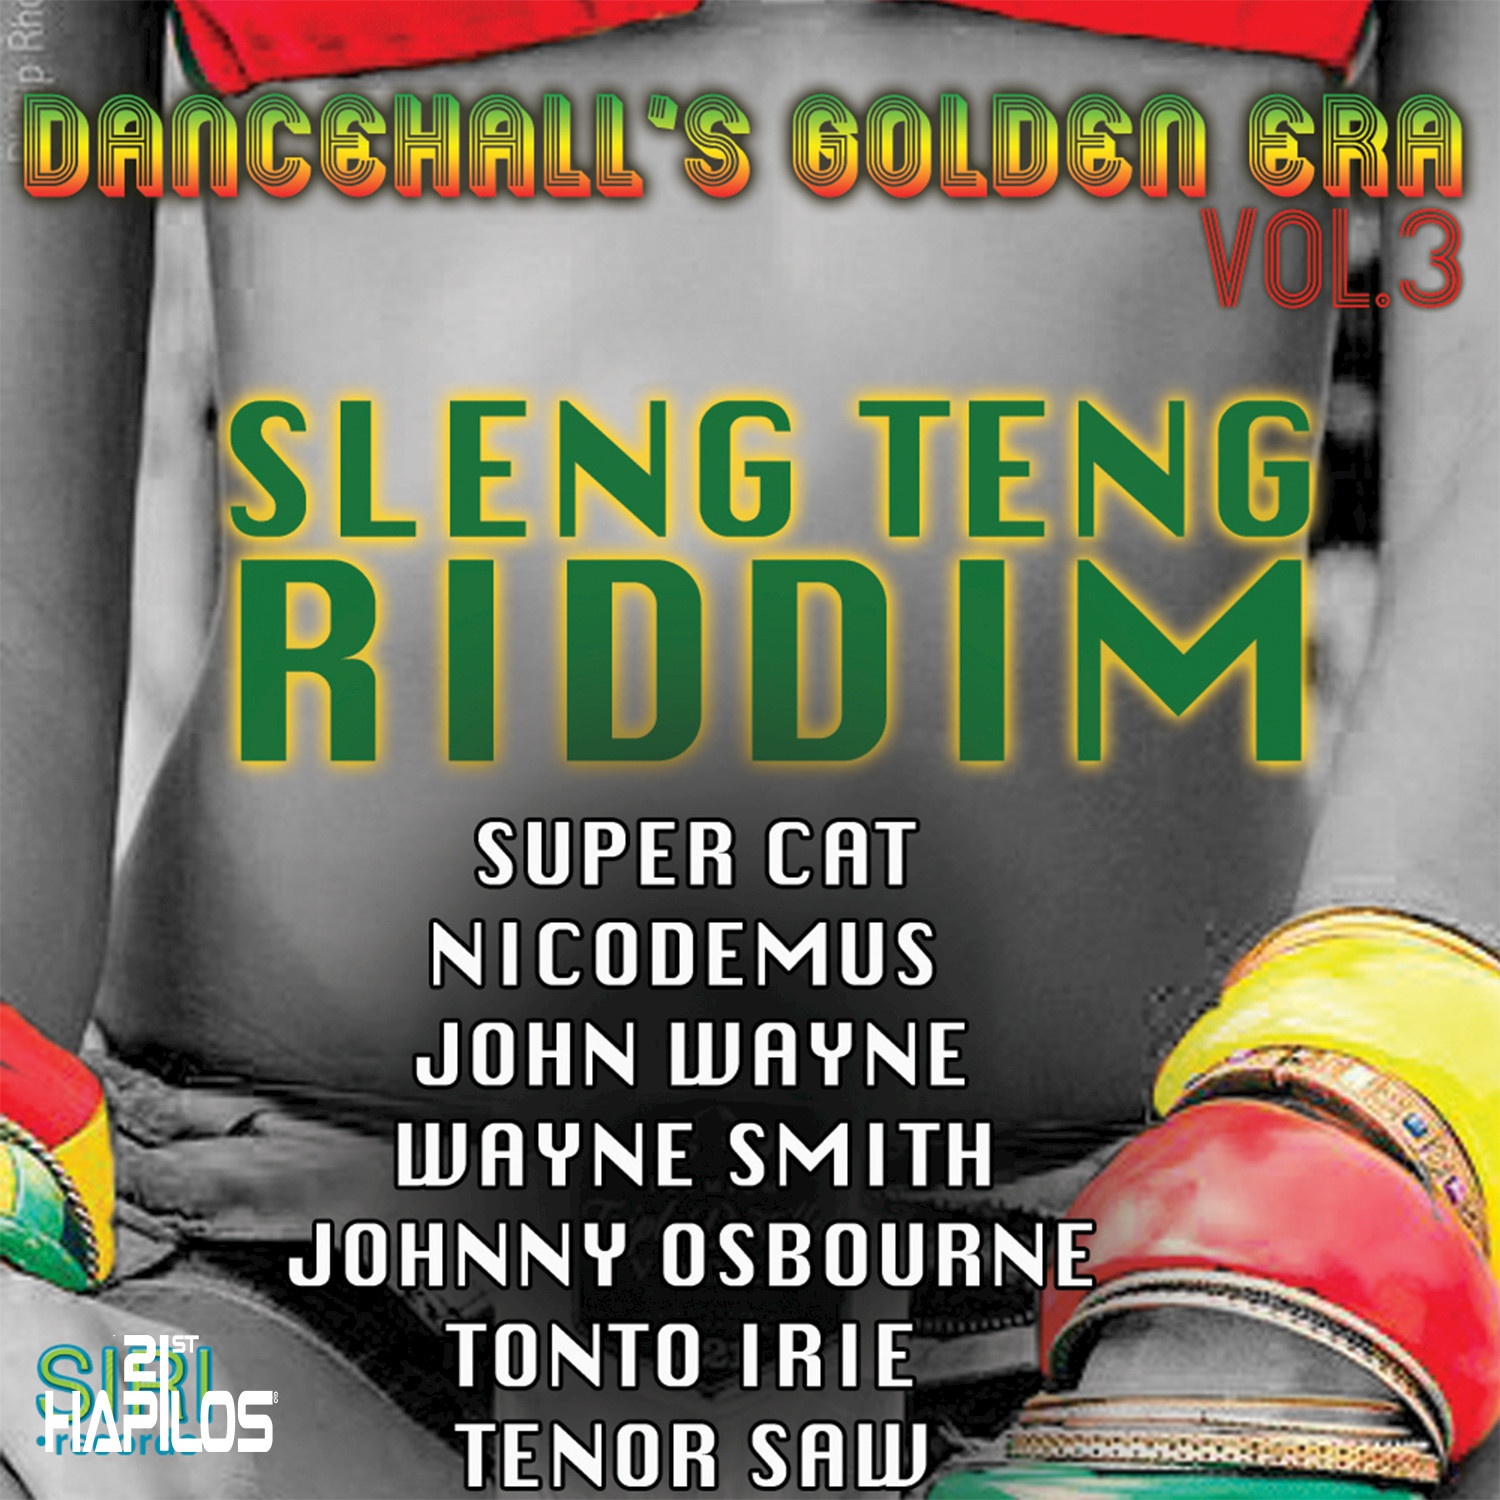 Dancehall's Golden Era, Vol.3 - Sleng Teng Riddim